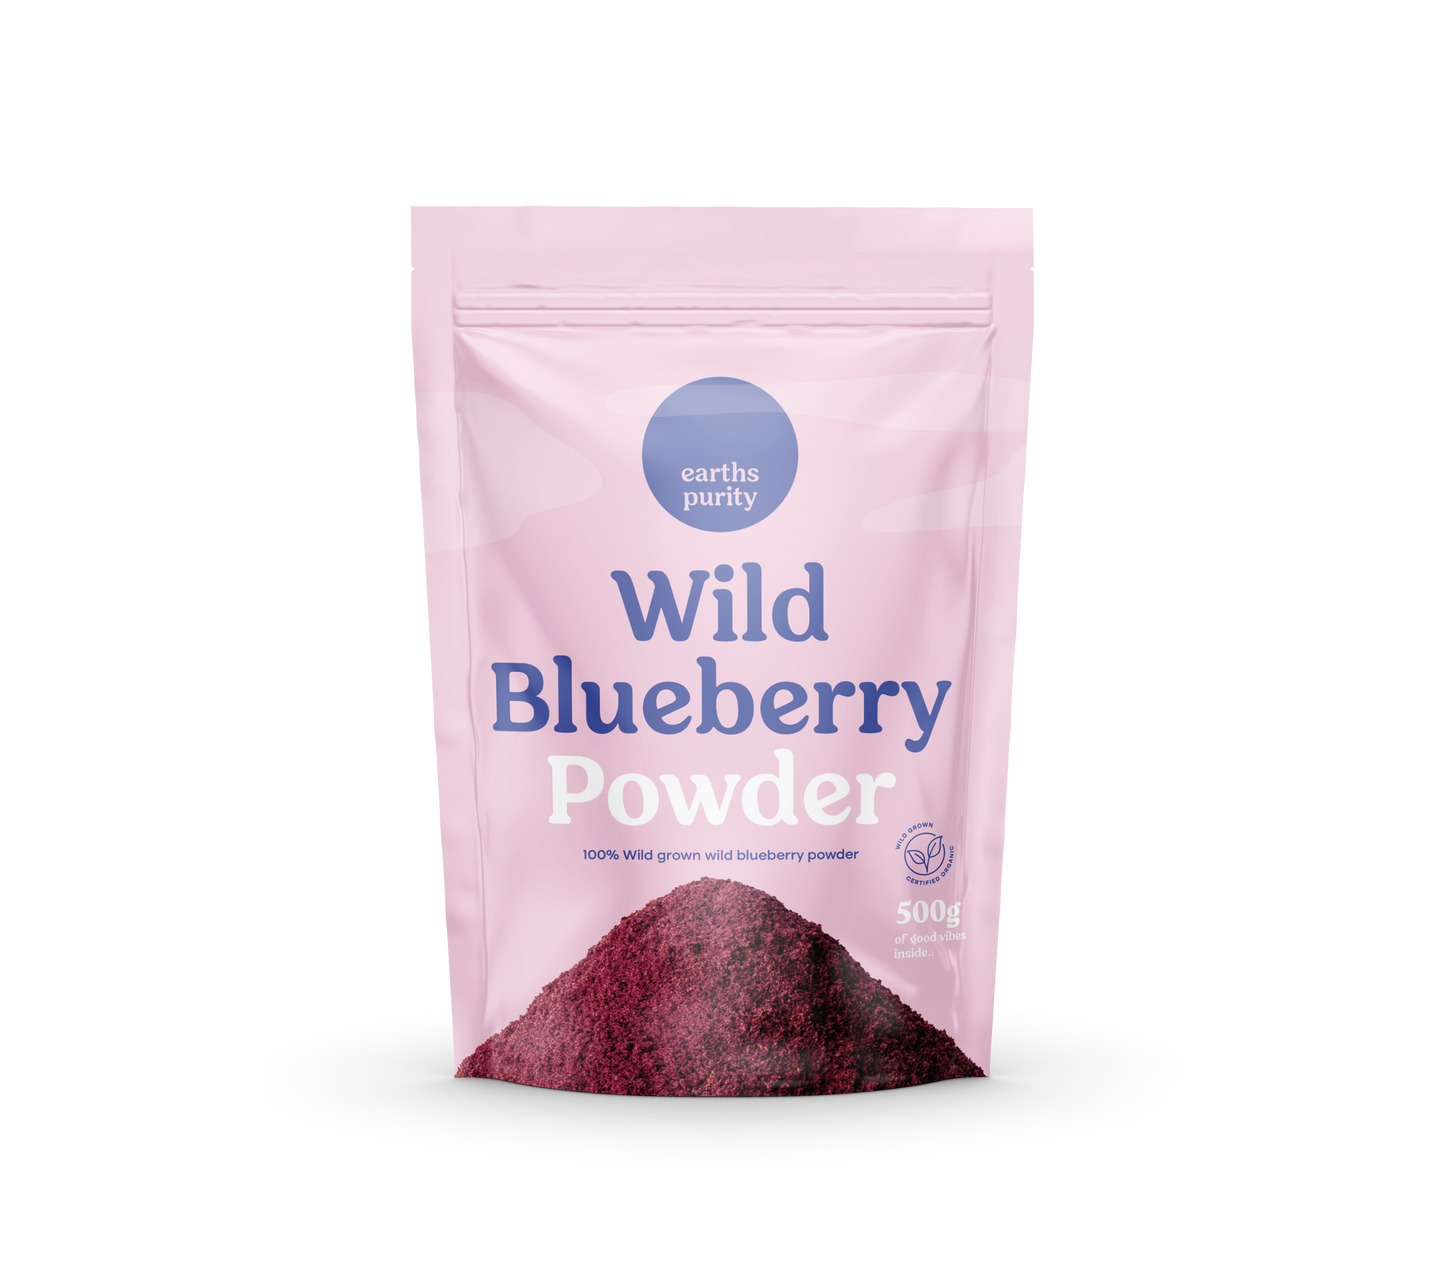 Wild Blueberry Powder 500g (Wild Grown)